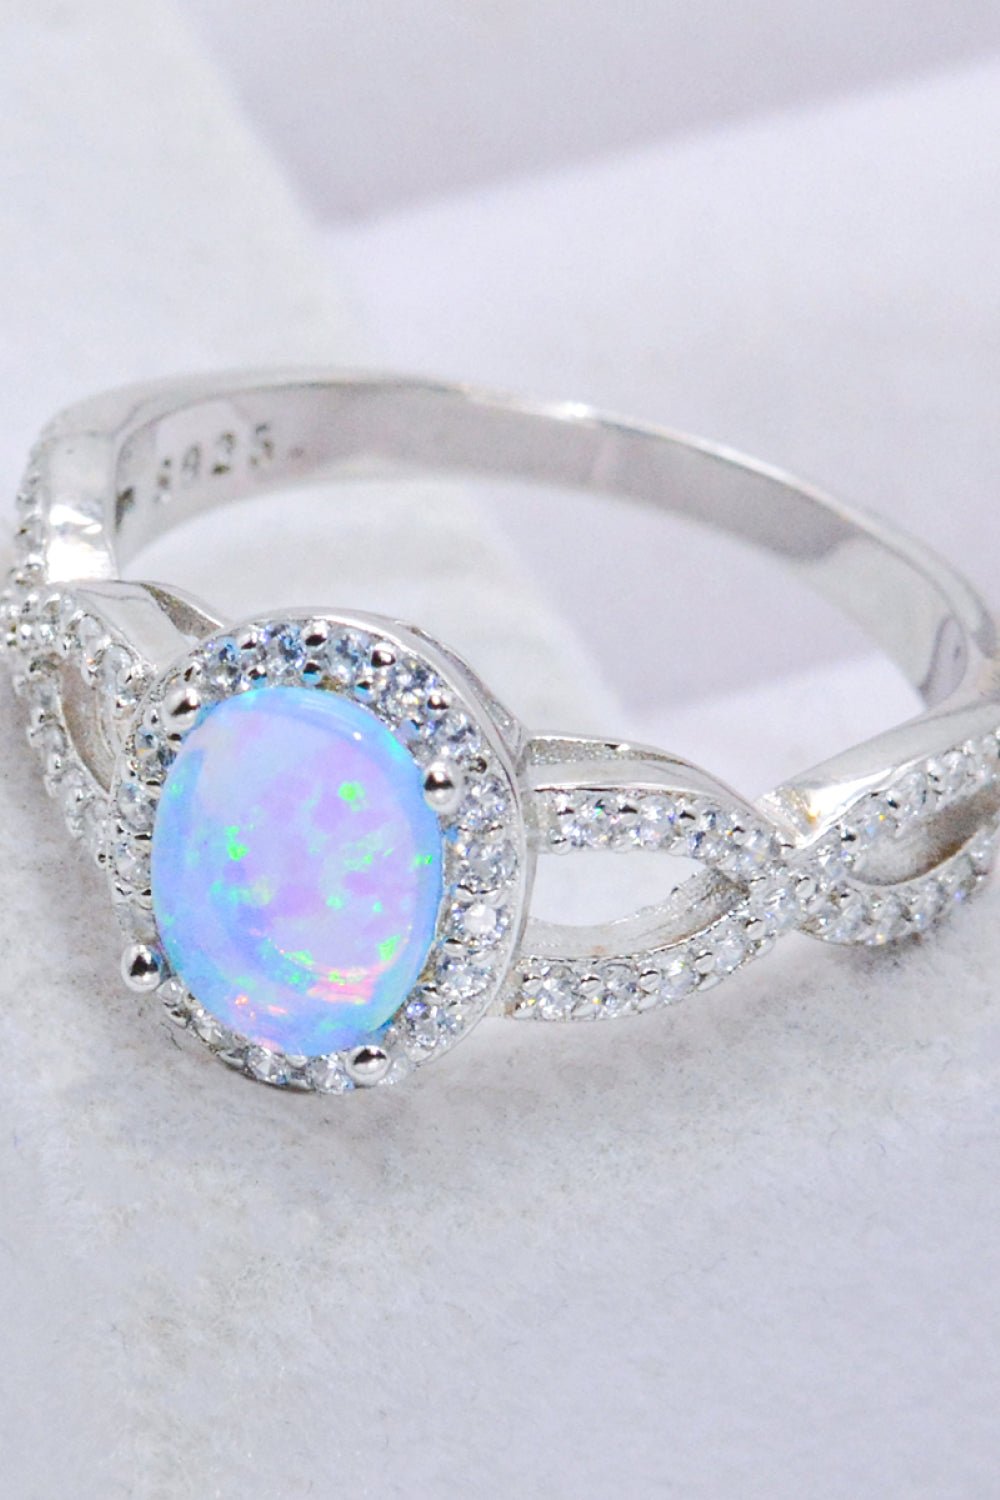 Blue Opal Halo Ring - Tangerine Goddess